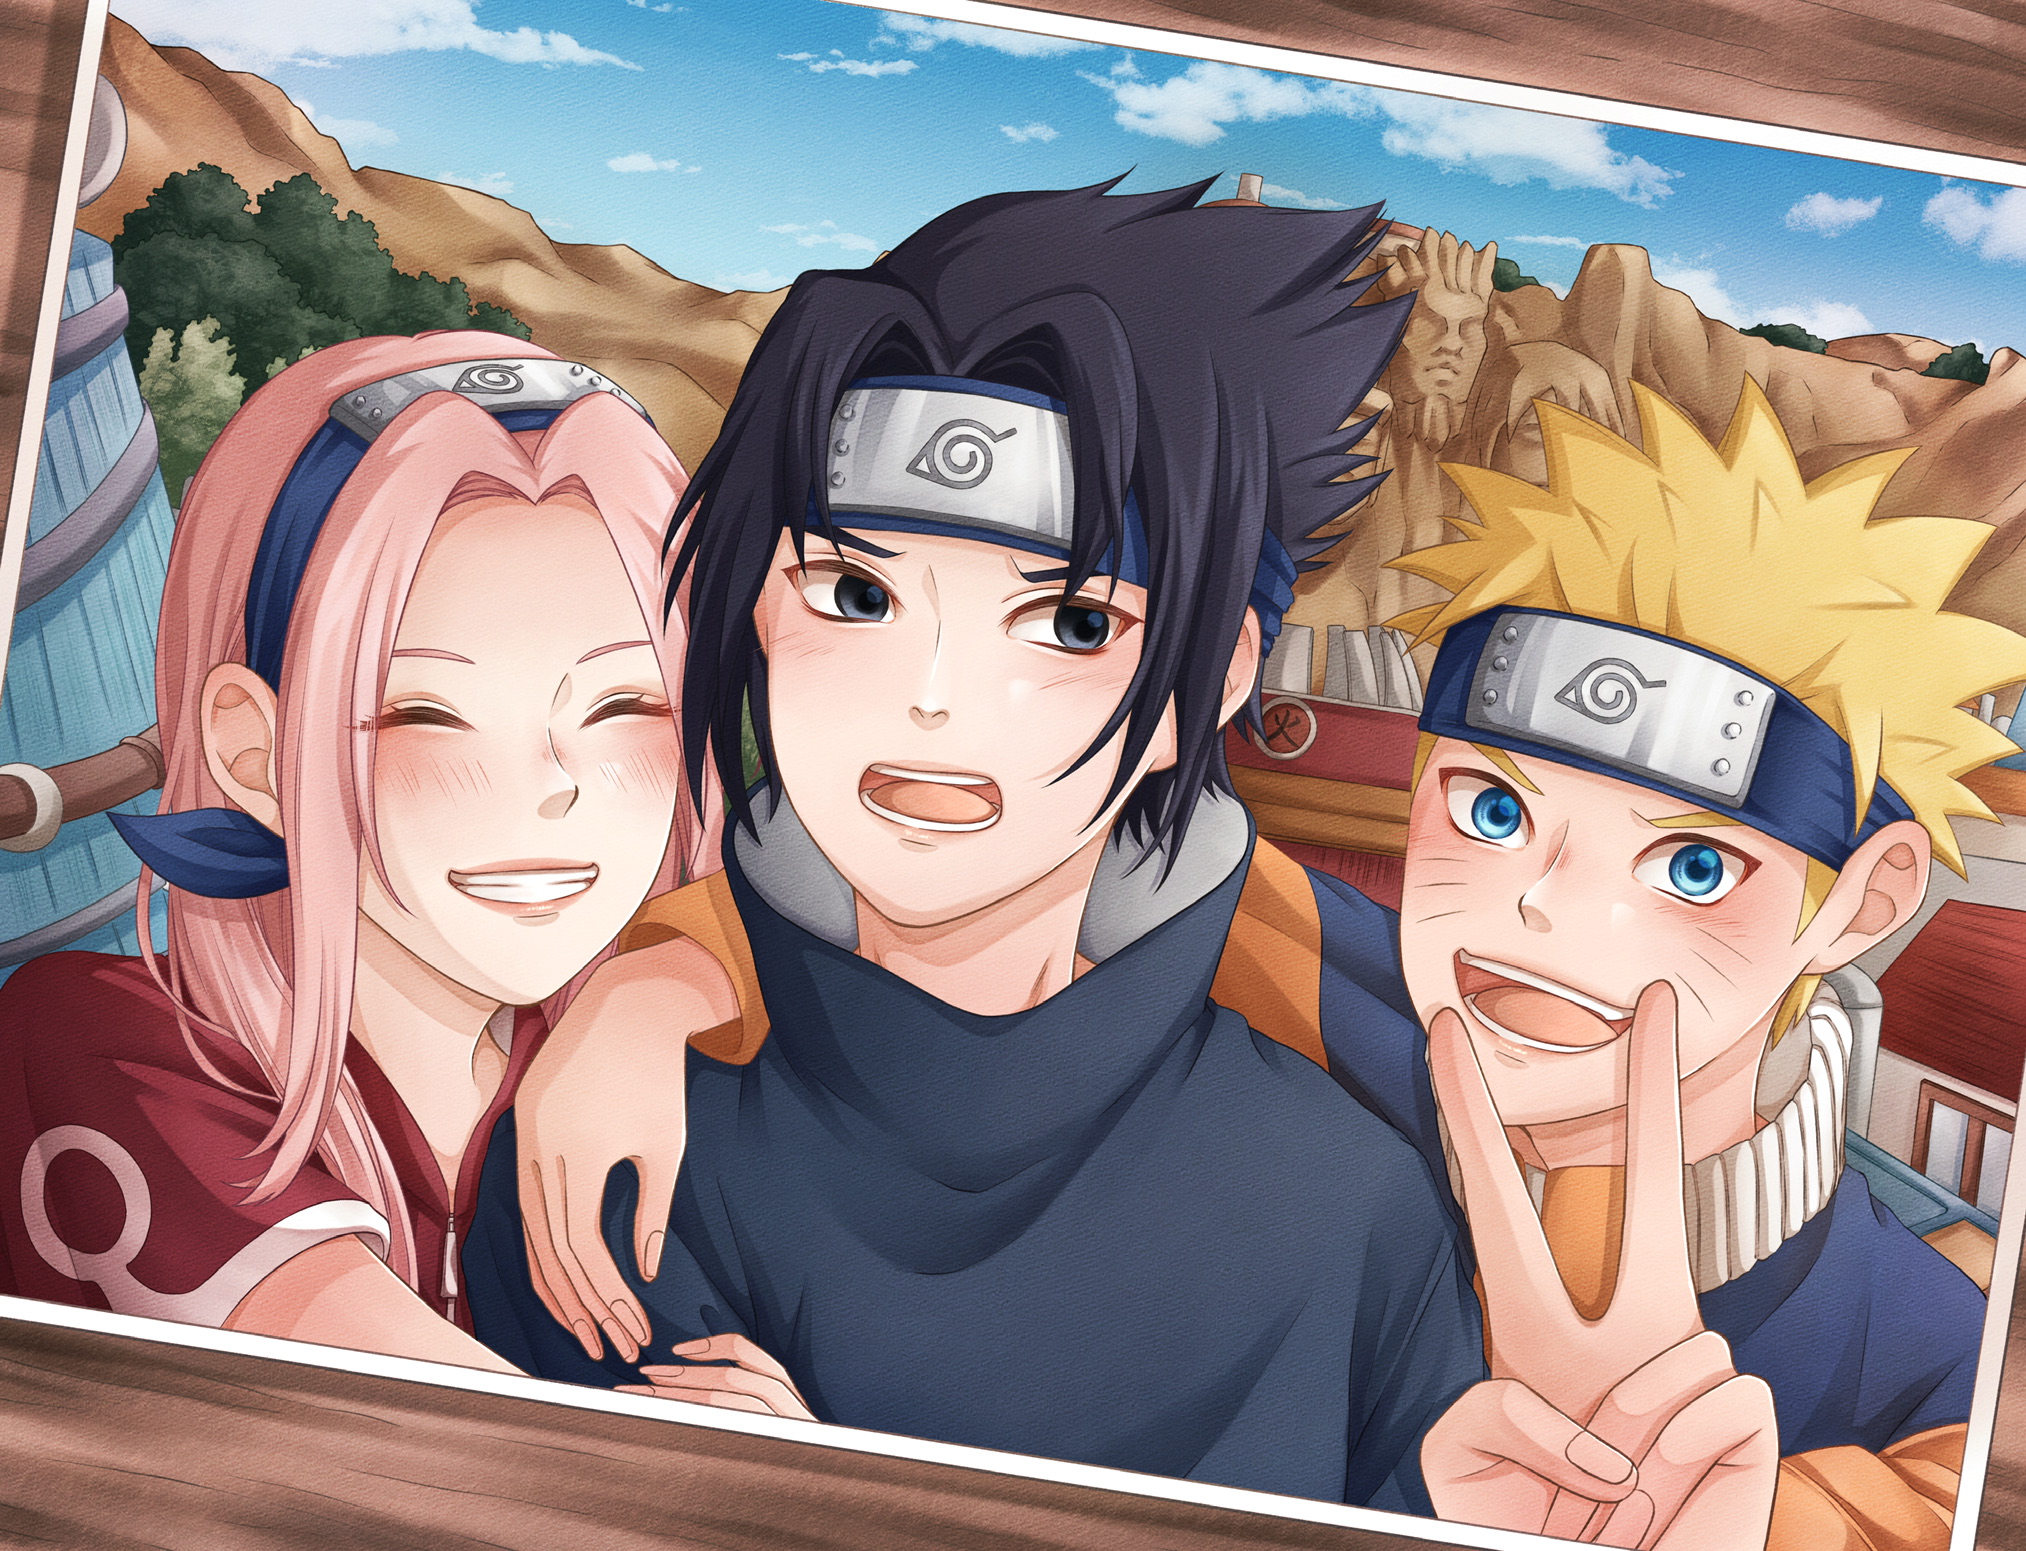 HD wallpaper: anime boys, Sakura (Naruto), picture-in-picture | Wallpaper  Flare